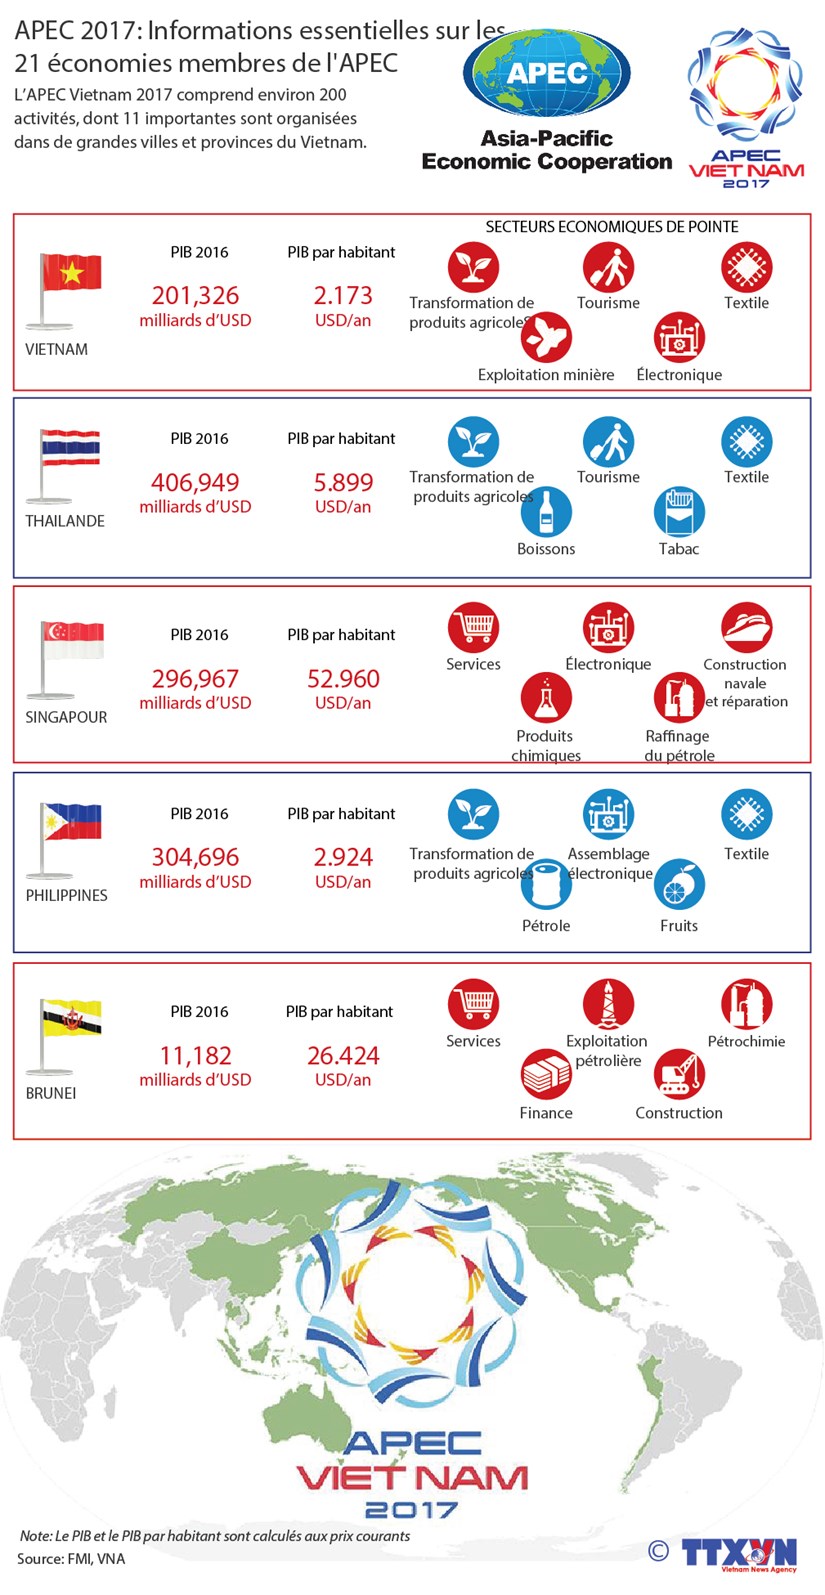 Les informations essentielles sur les 21 economies membres de l'APEC hinh anh 1